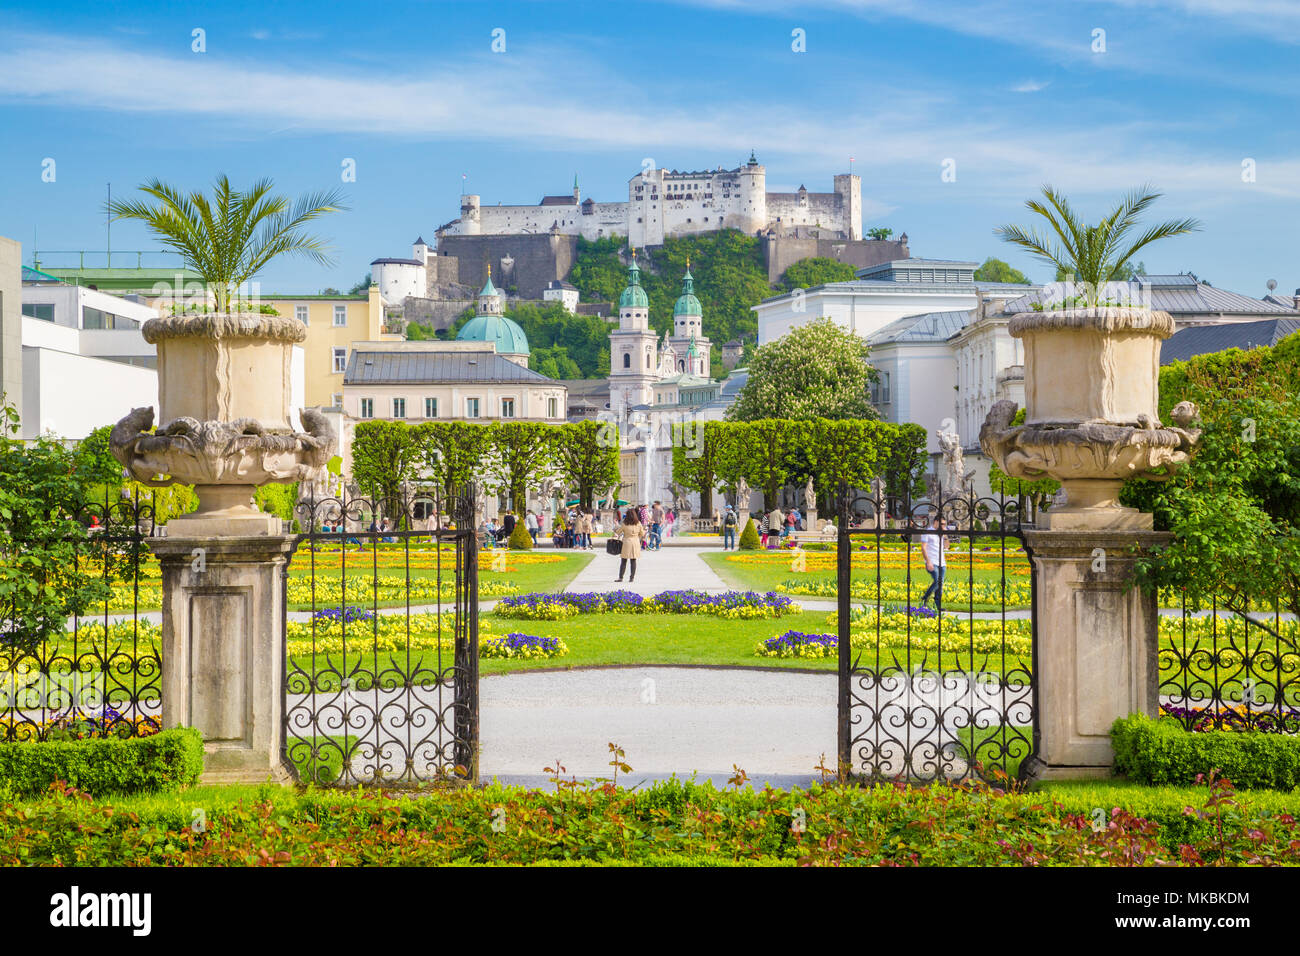 Visualizzazione classica dei famosi giardini Mirabell con la vecchia storica fortezza di Hohensalzburg in background su una bella giornata di sole con cielo blu e clou Foto Stock